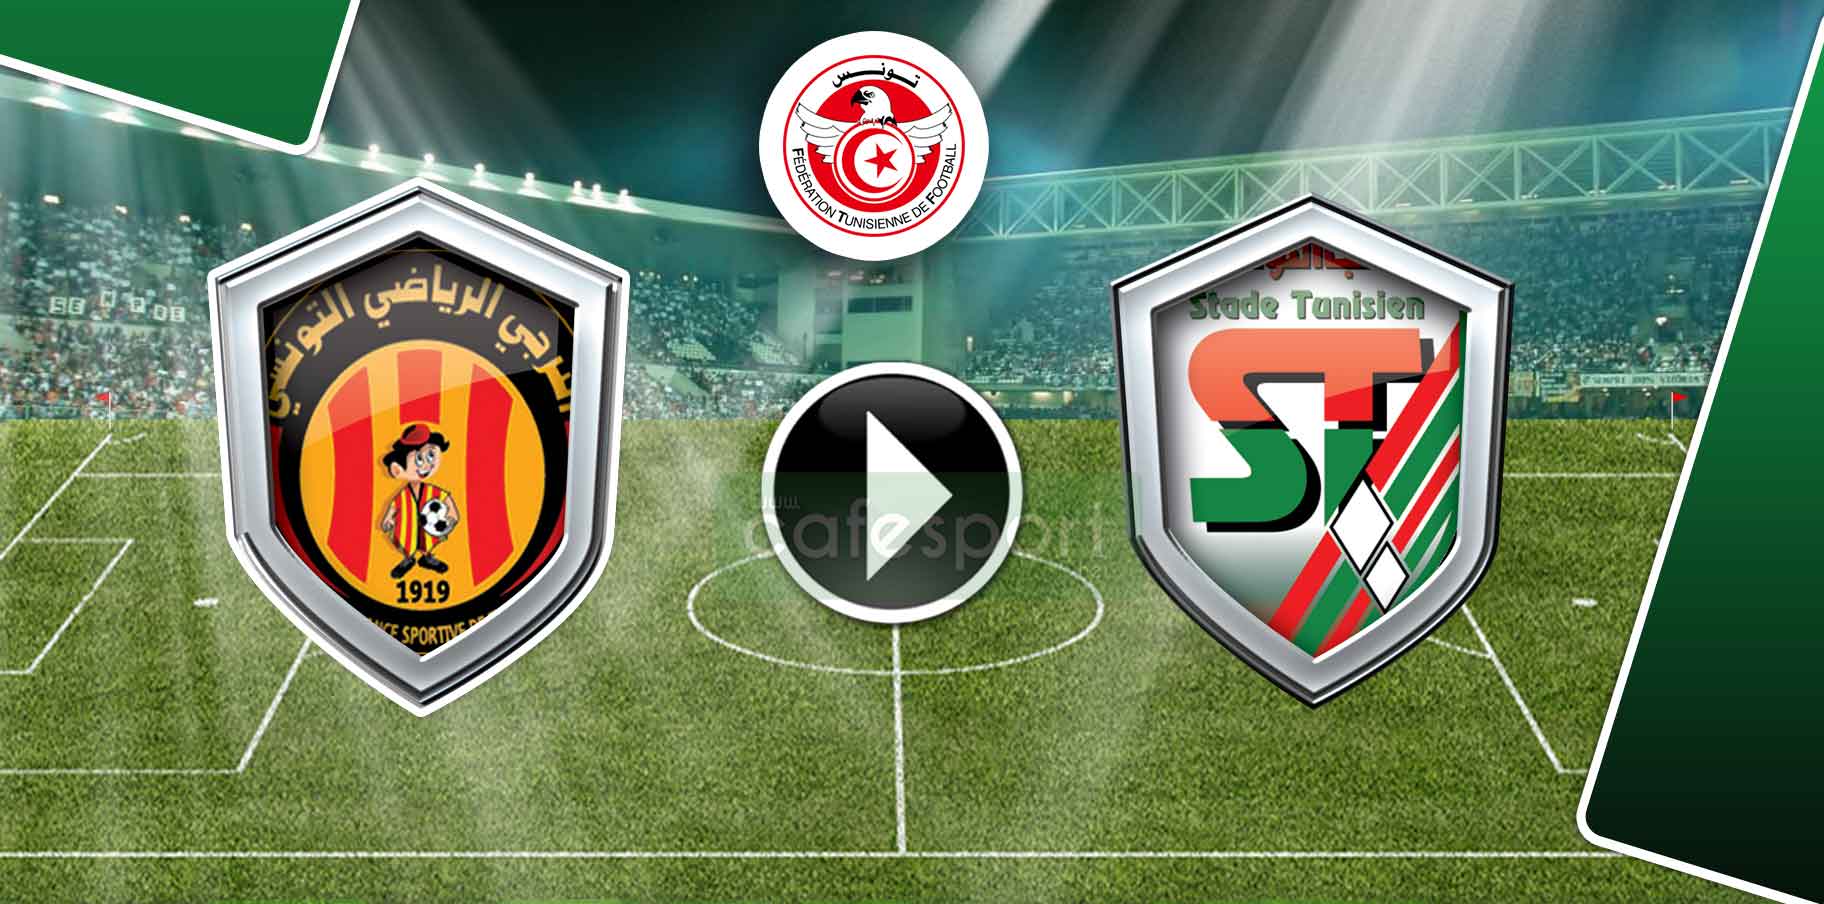 بث مباشر لمباراة الملعب التونسي - الترجي الرياضي